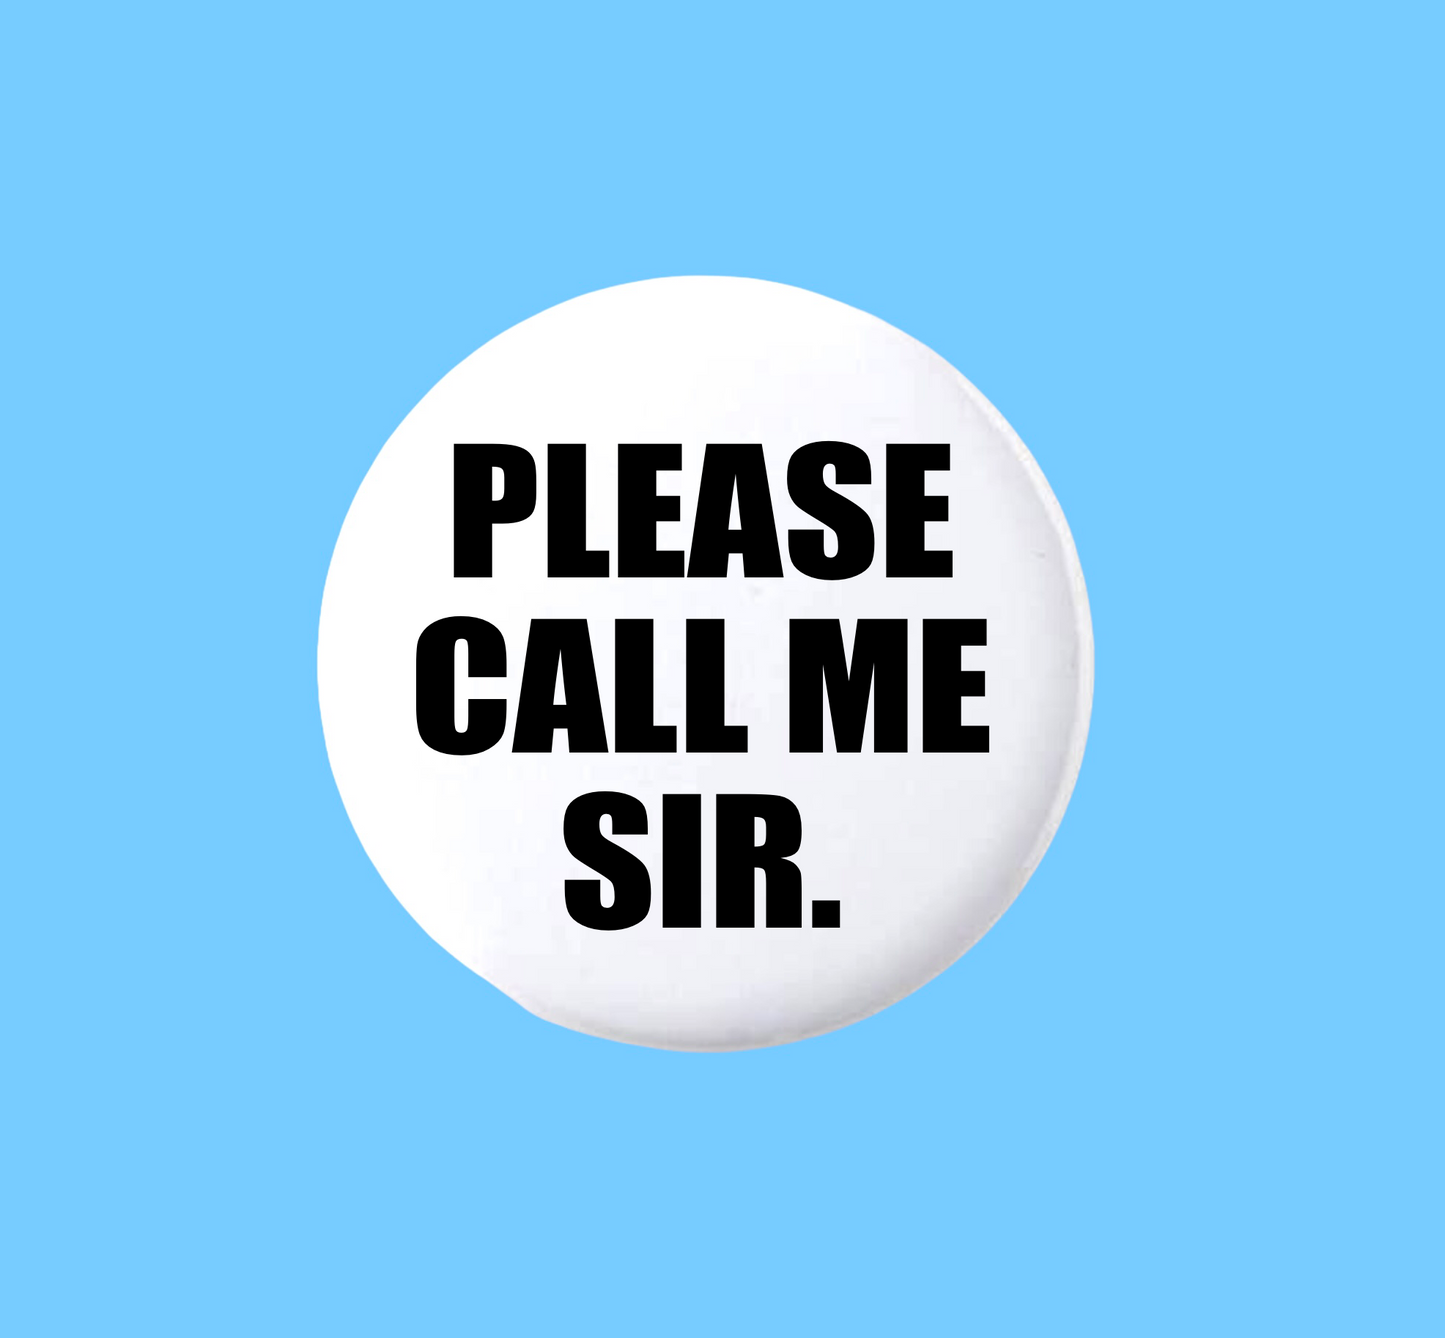 Please call me sir